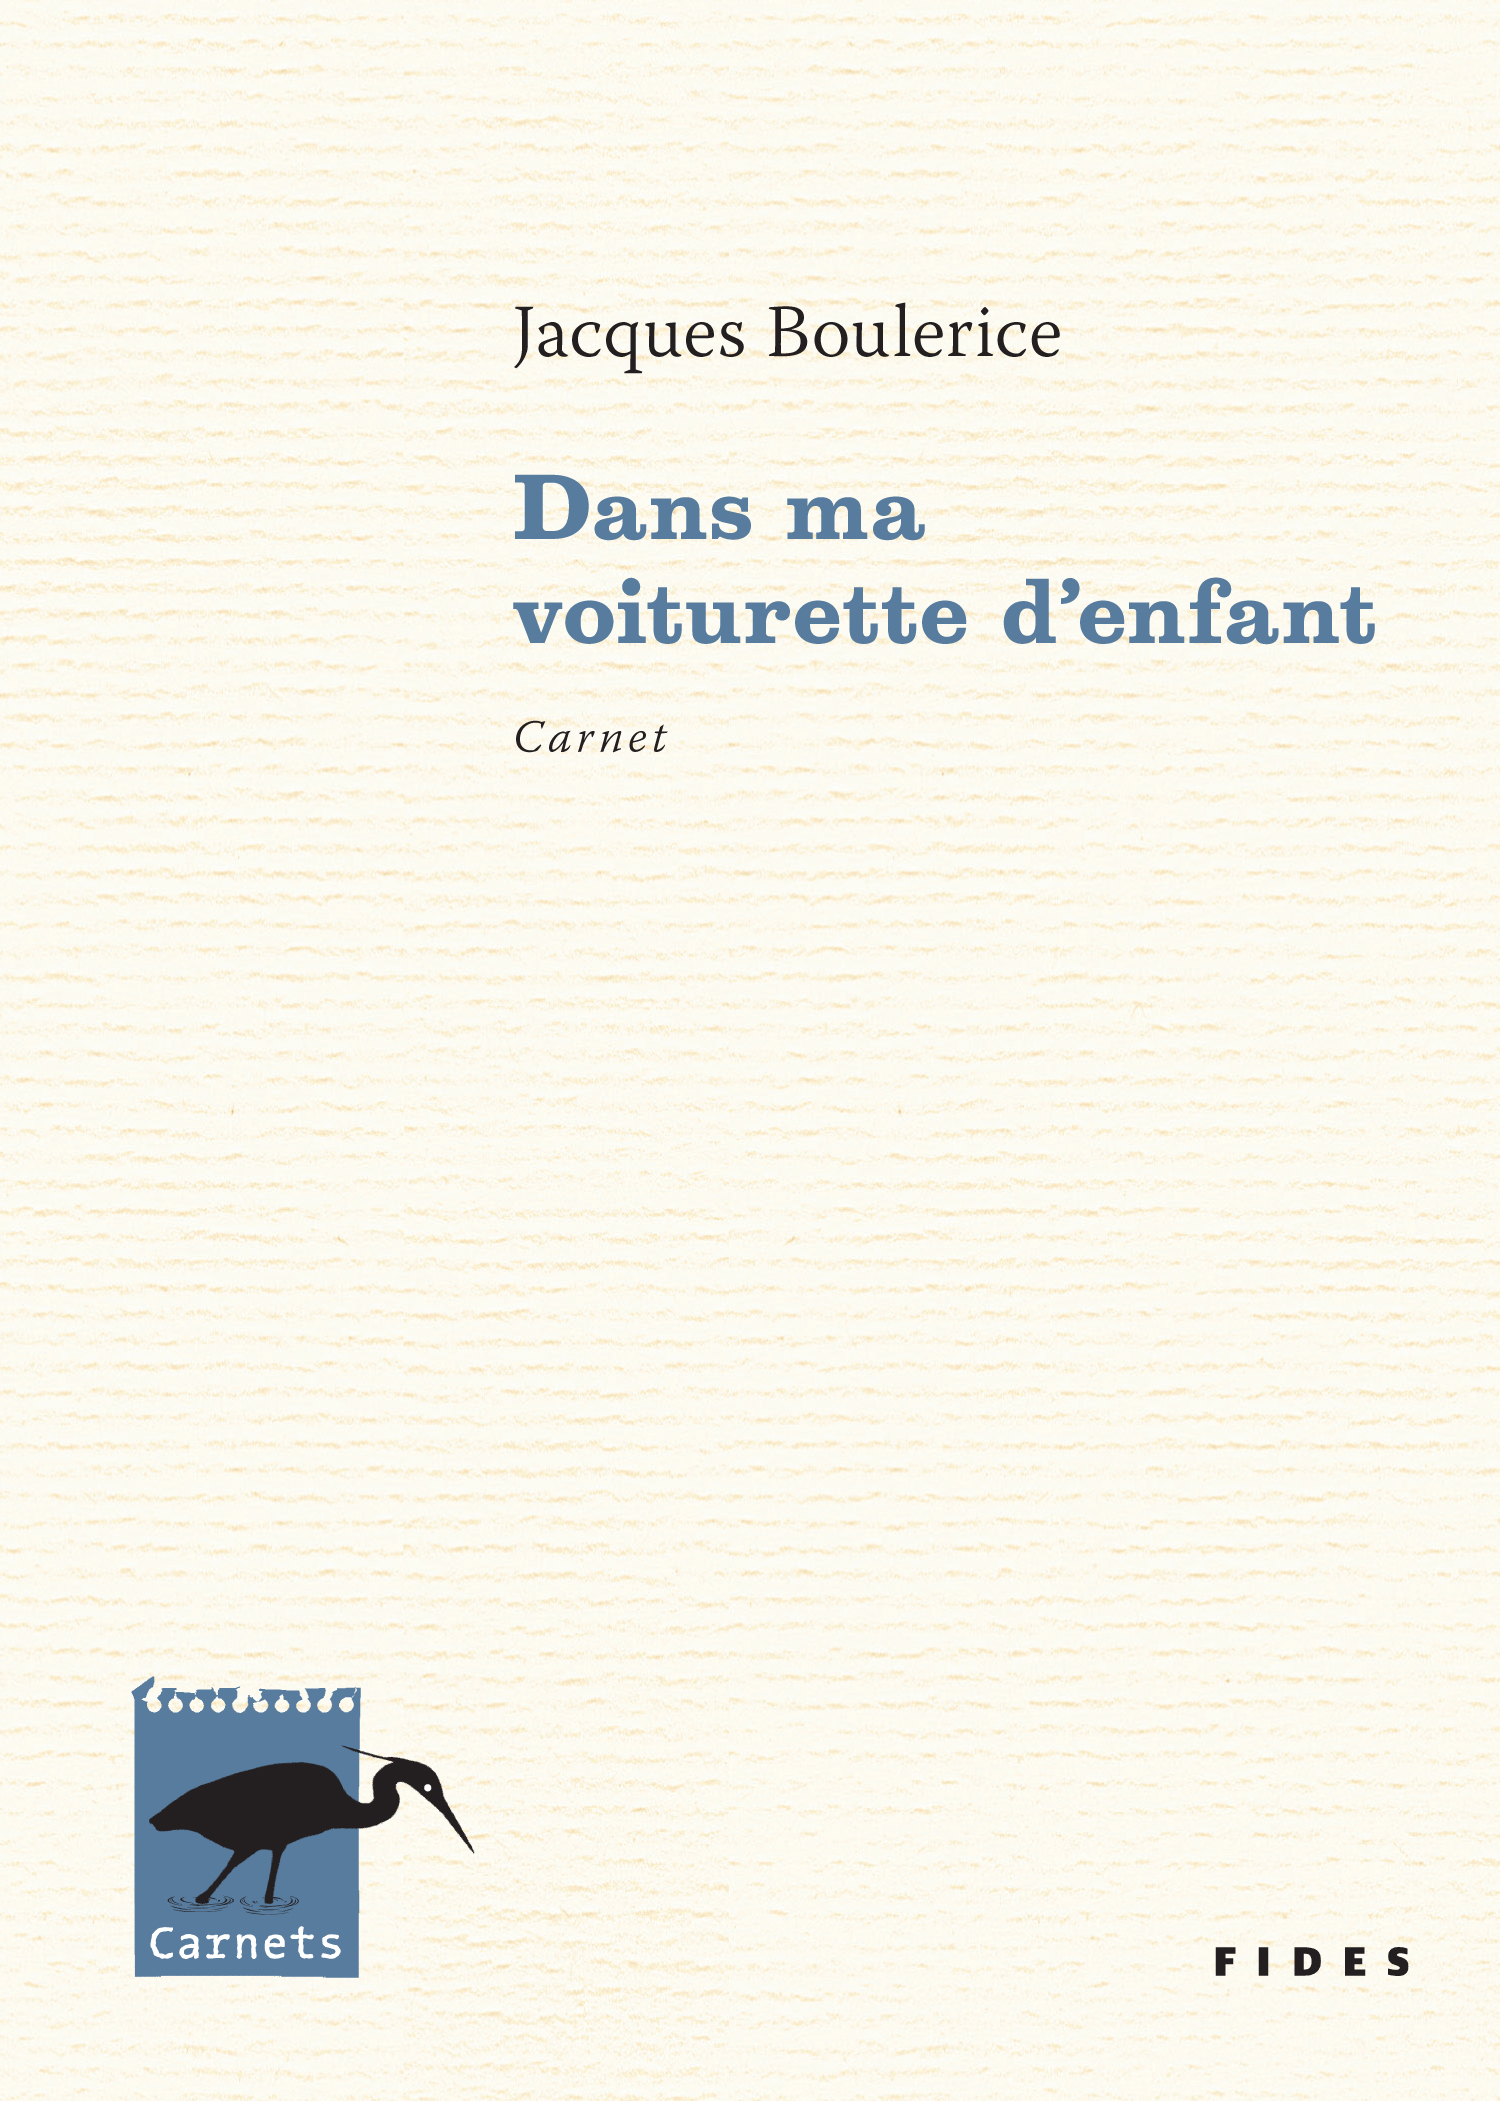 alt="Jacques-Boulerice"